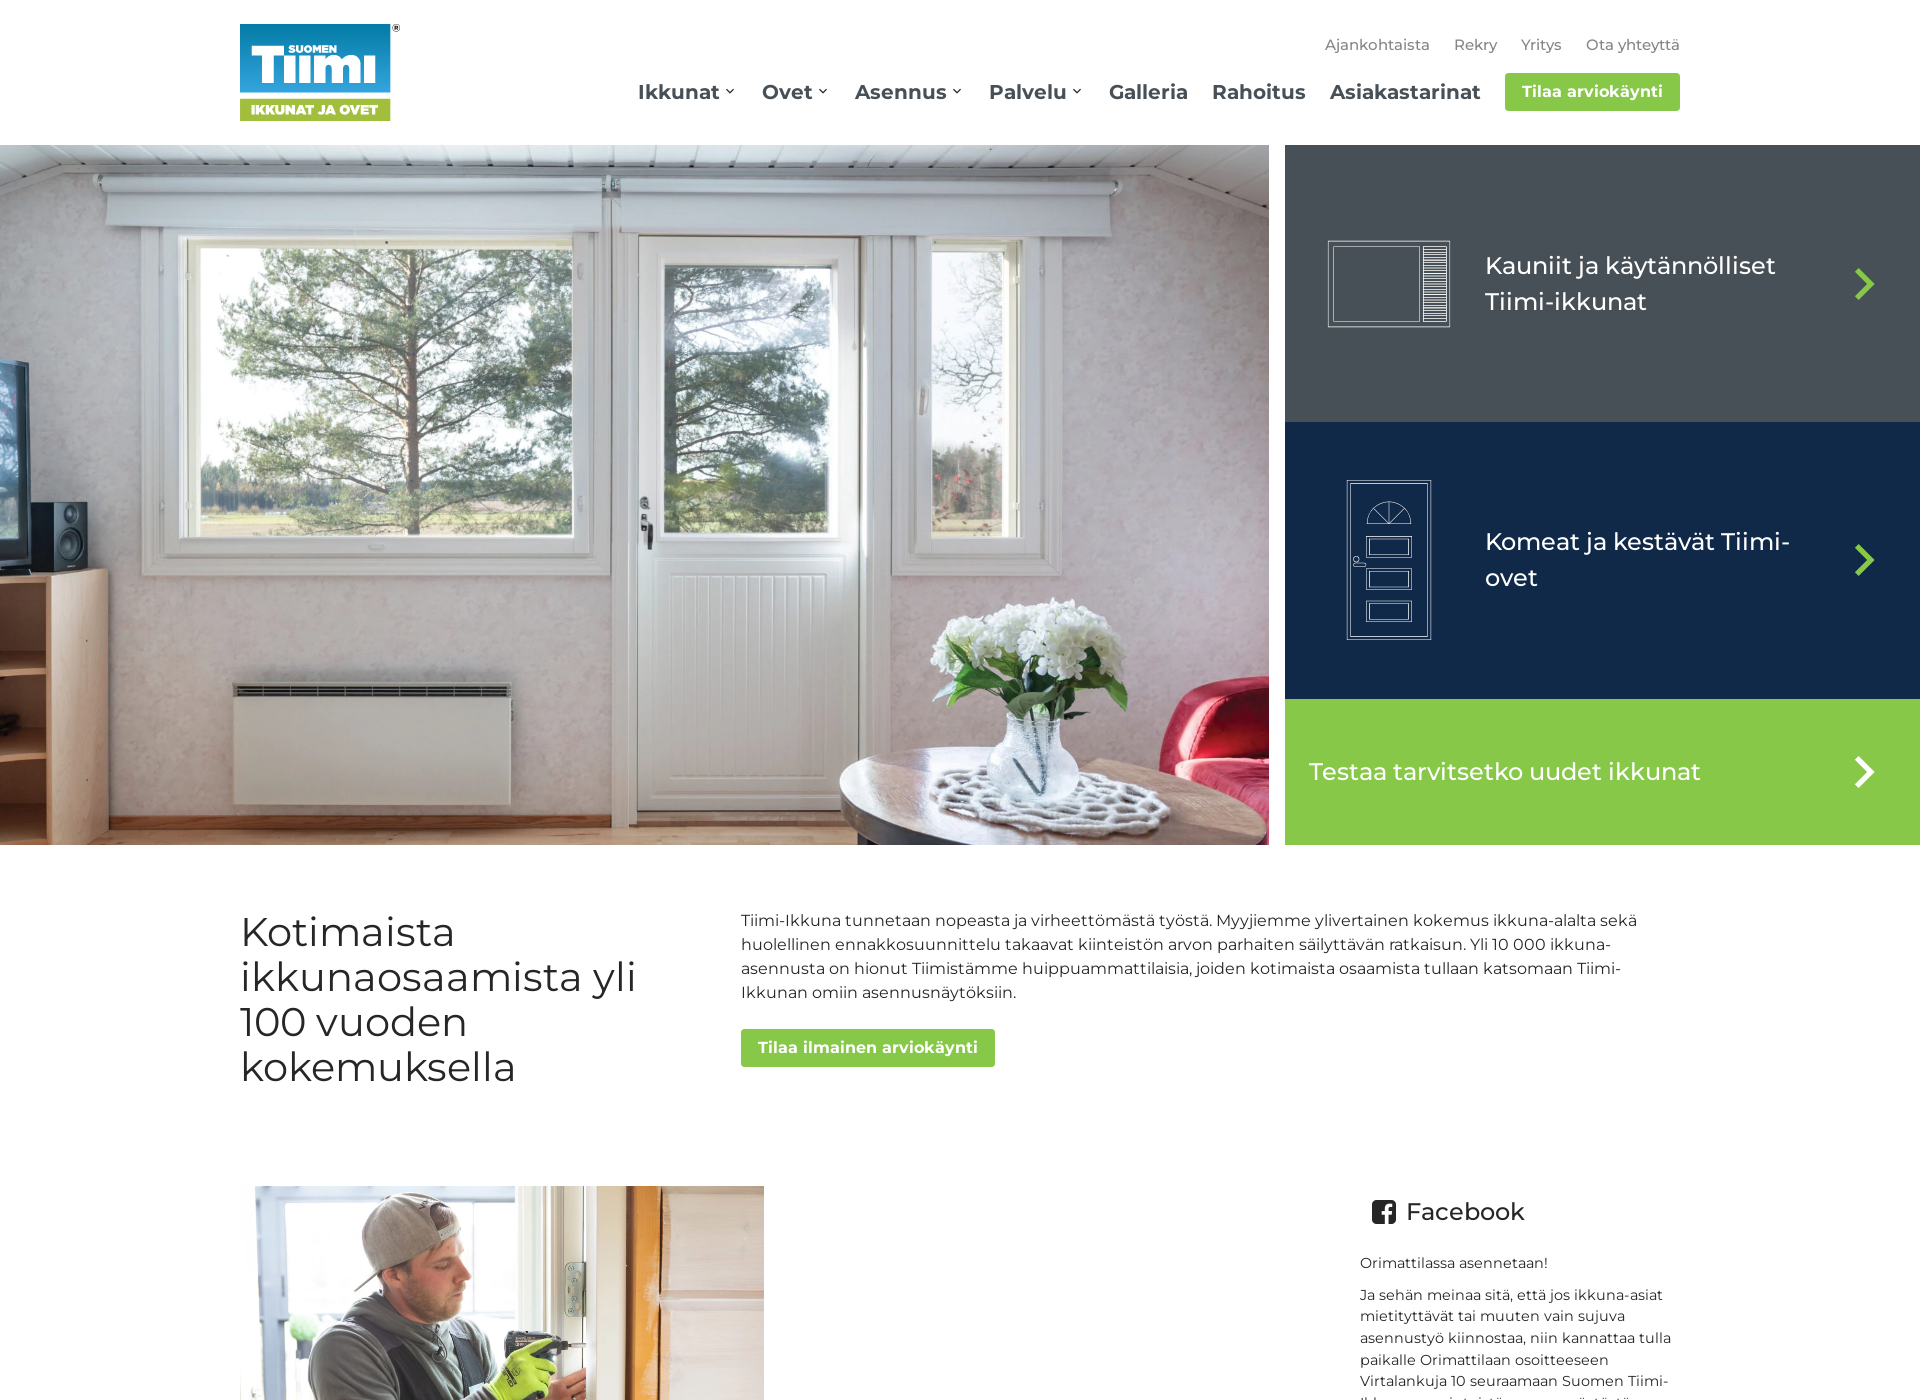 Näyttökuva tiimi-ikkuna.fi